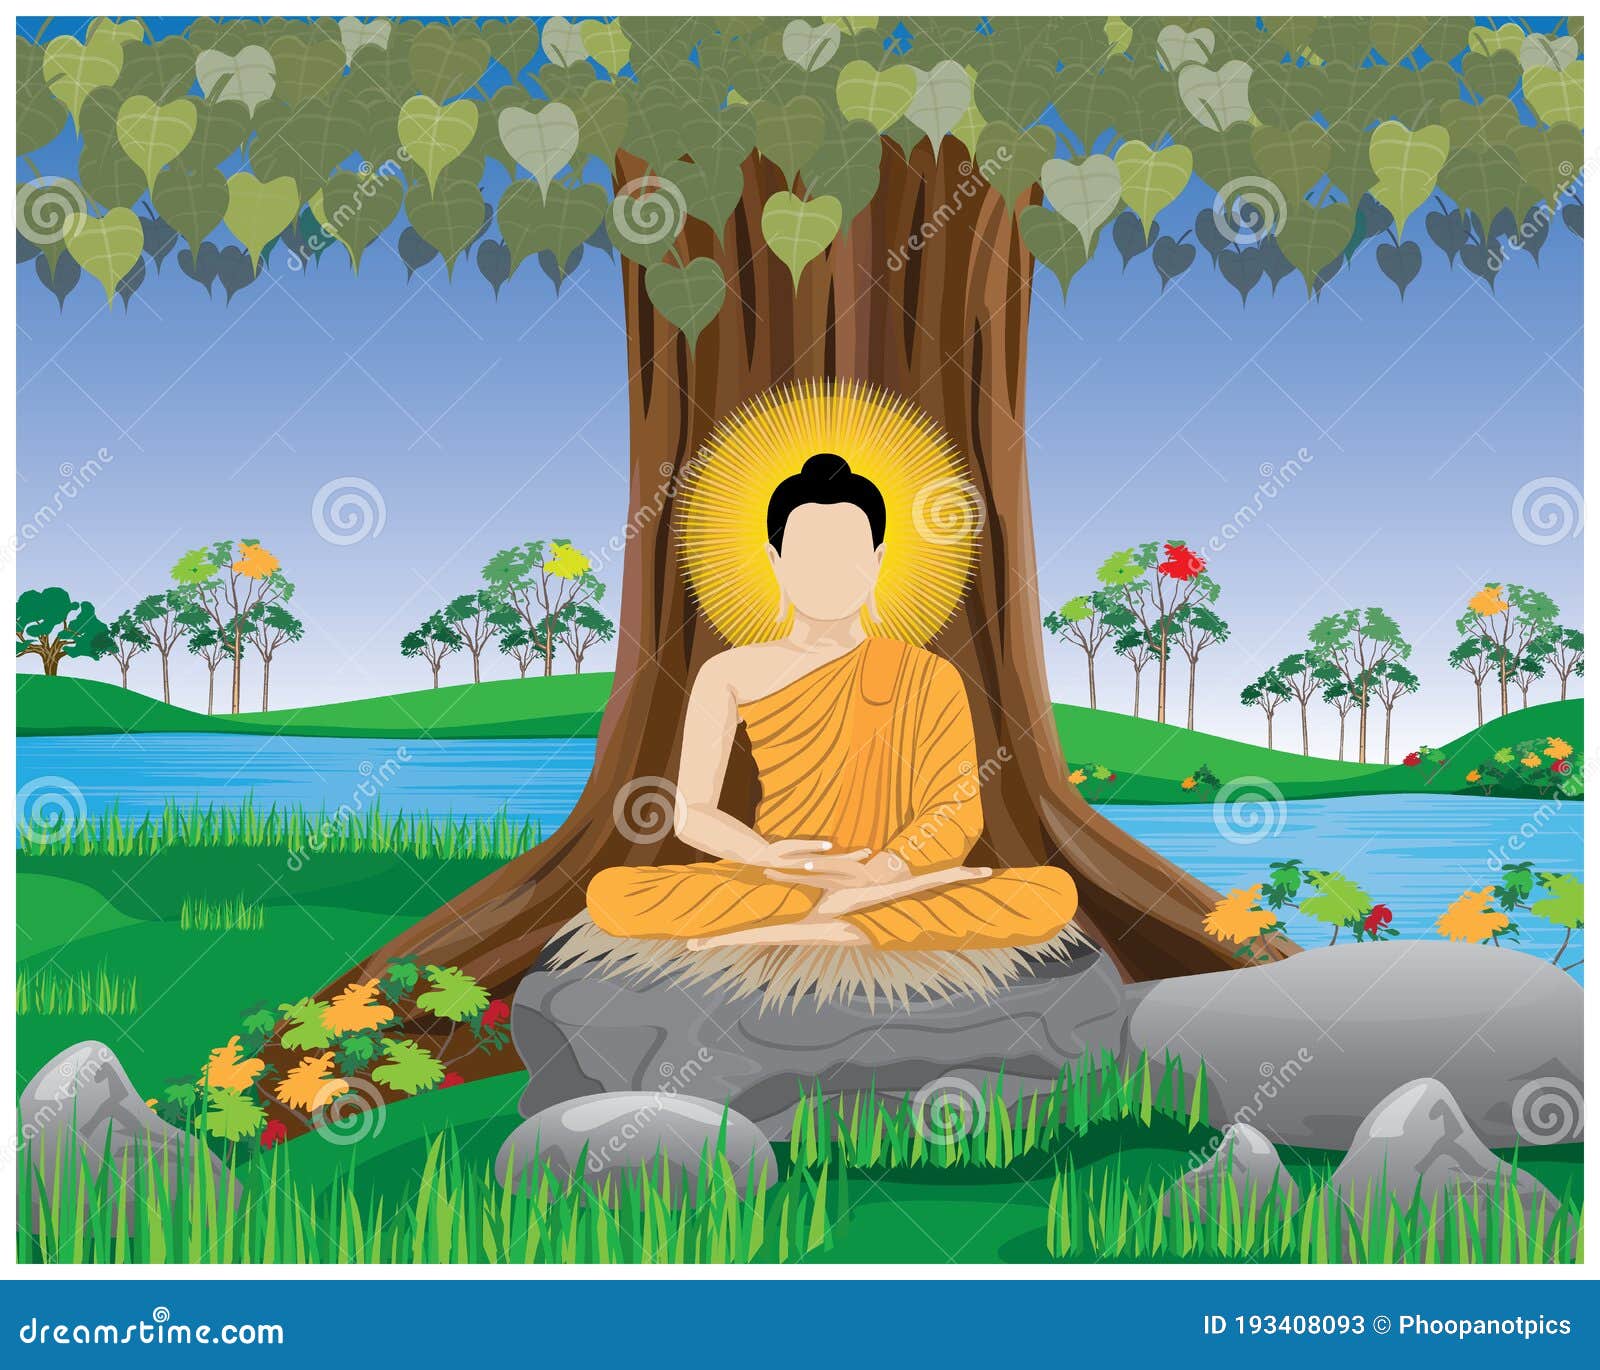 Isolated The Buddha On White Background Vector DesignThe Buddha ...